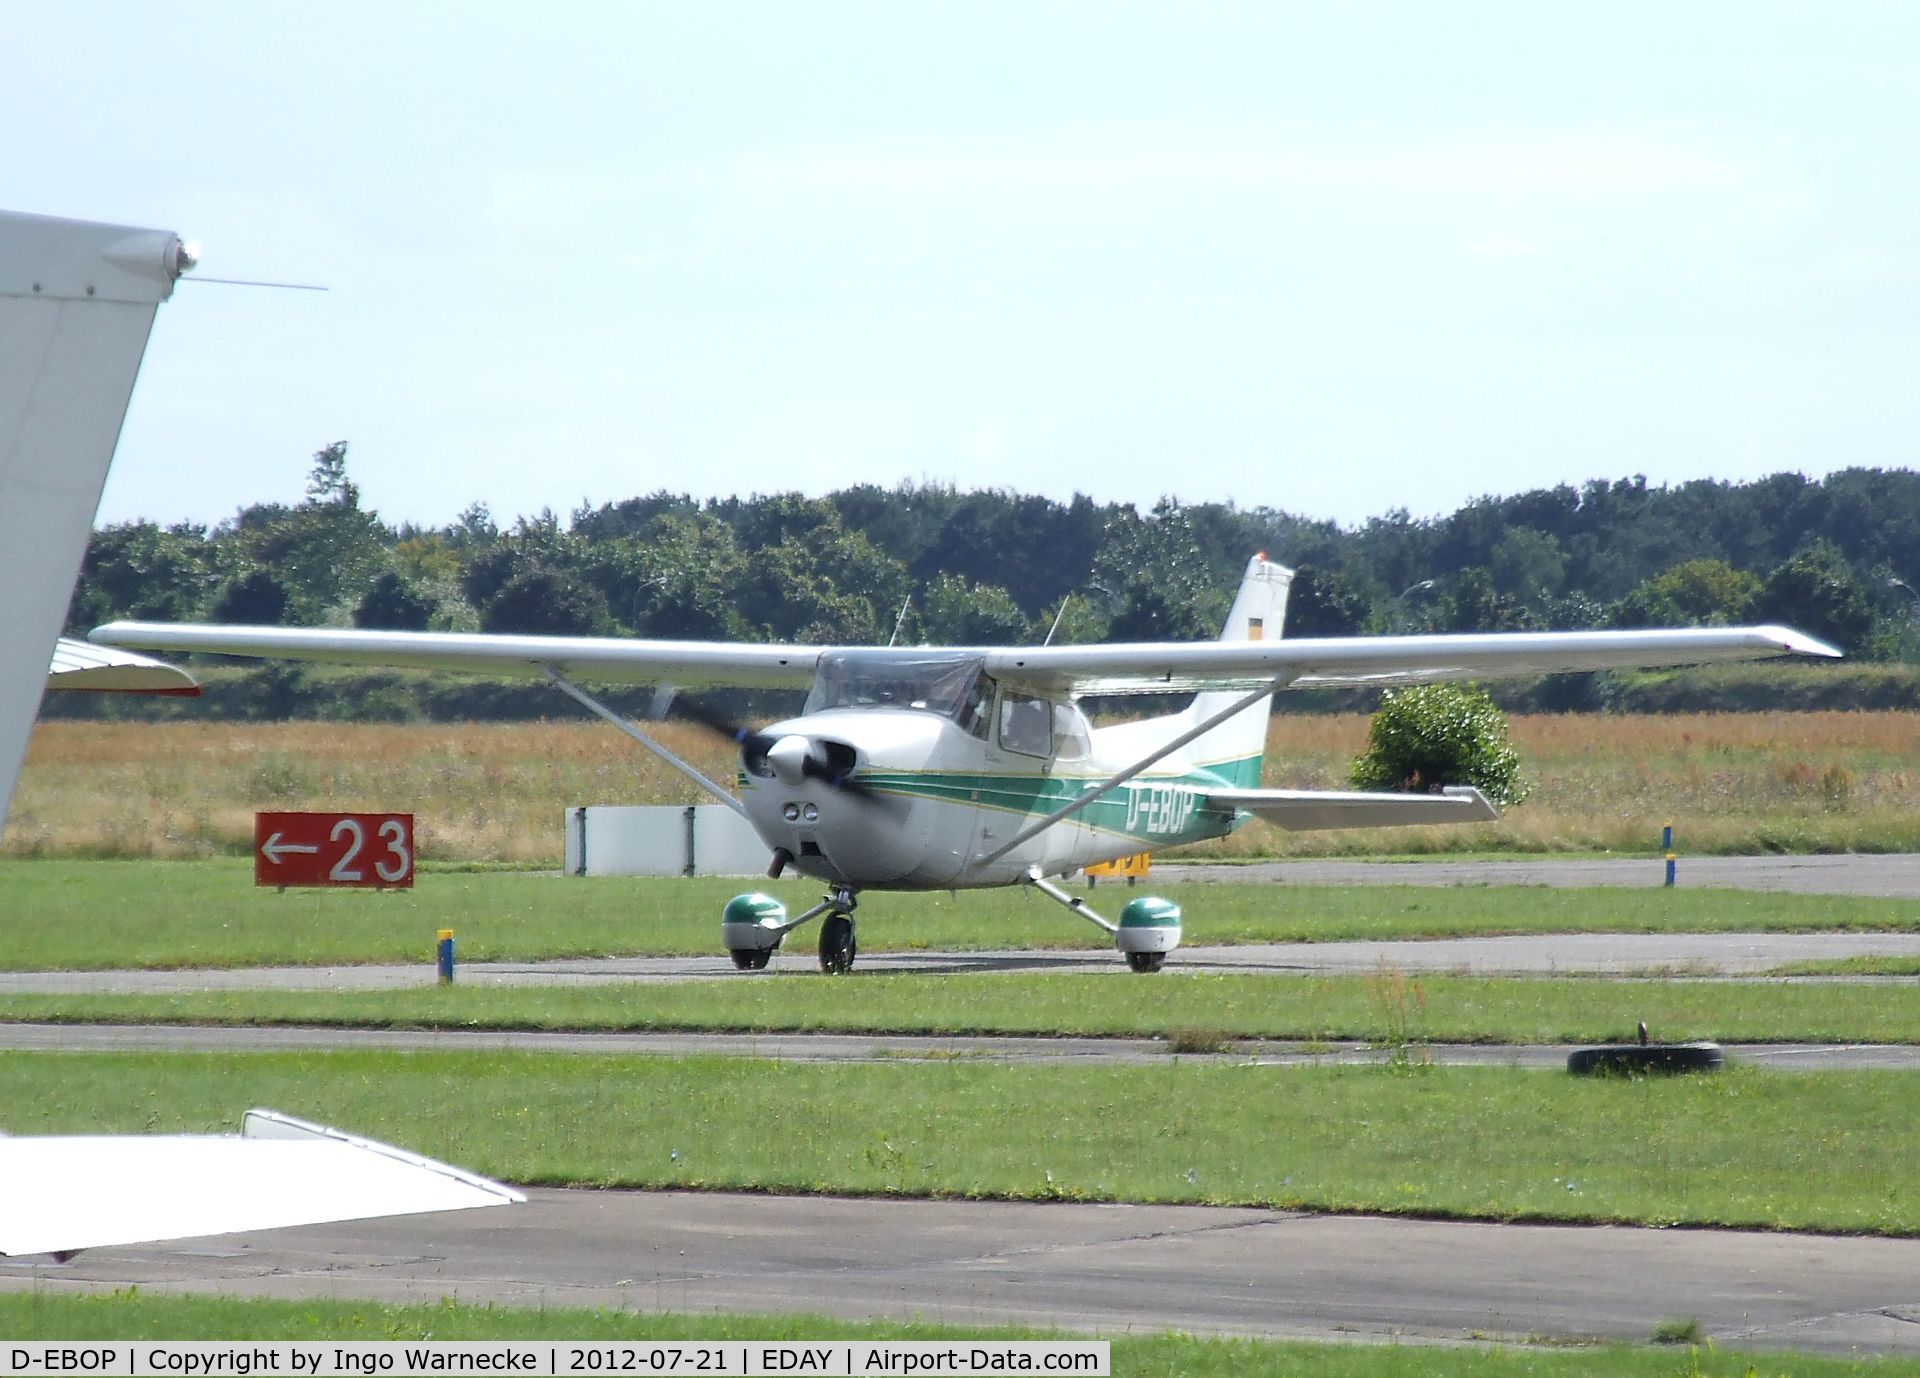 D-EBOP, Reims F172N Skyhawk C/N 1865, Cessna (Reims) F127N Skyhawk at Strausberg airfield